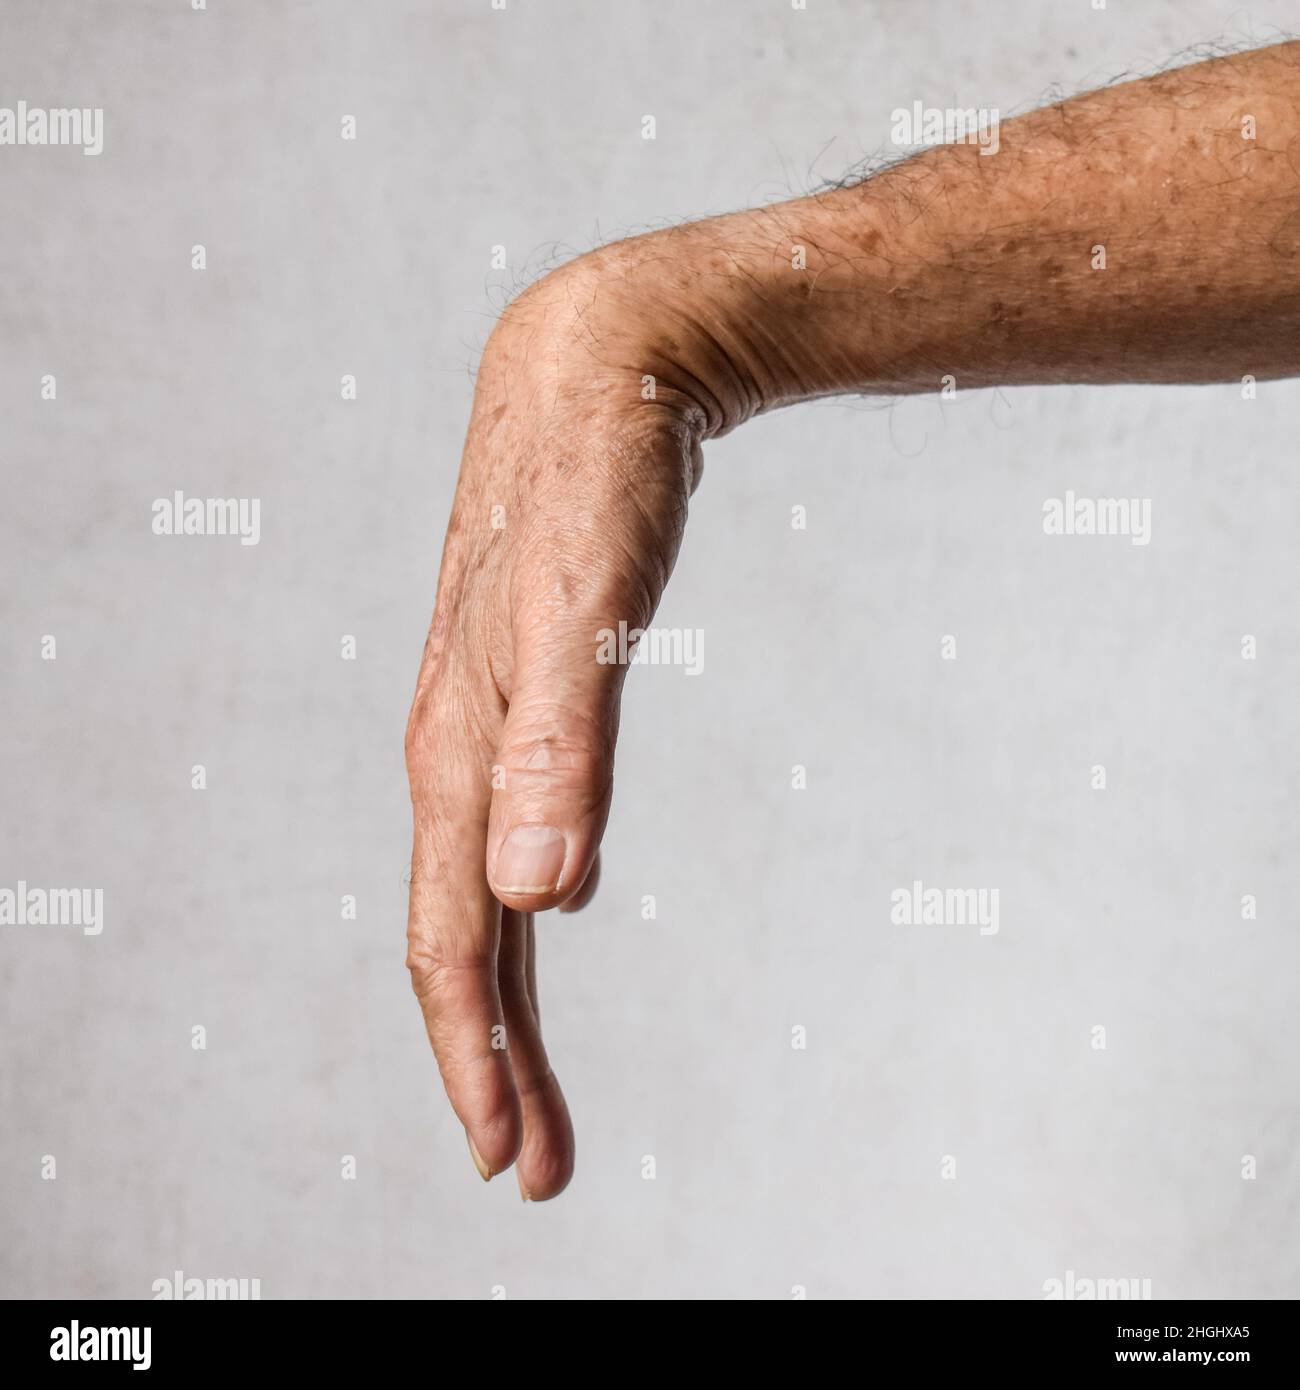 Radial nerve injury or wrist drop of Asian elder man. Stock Photo